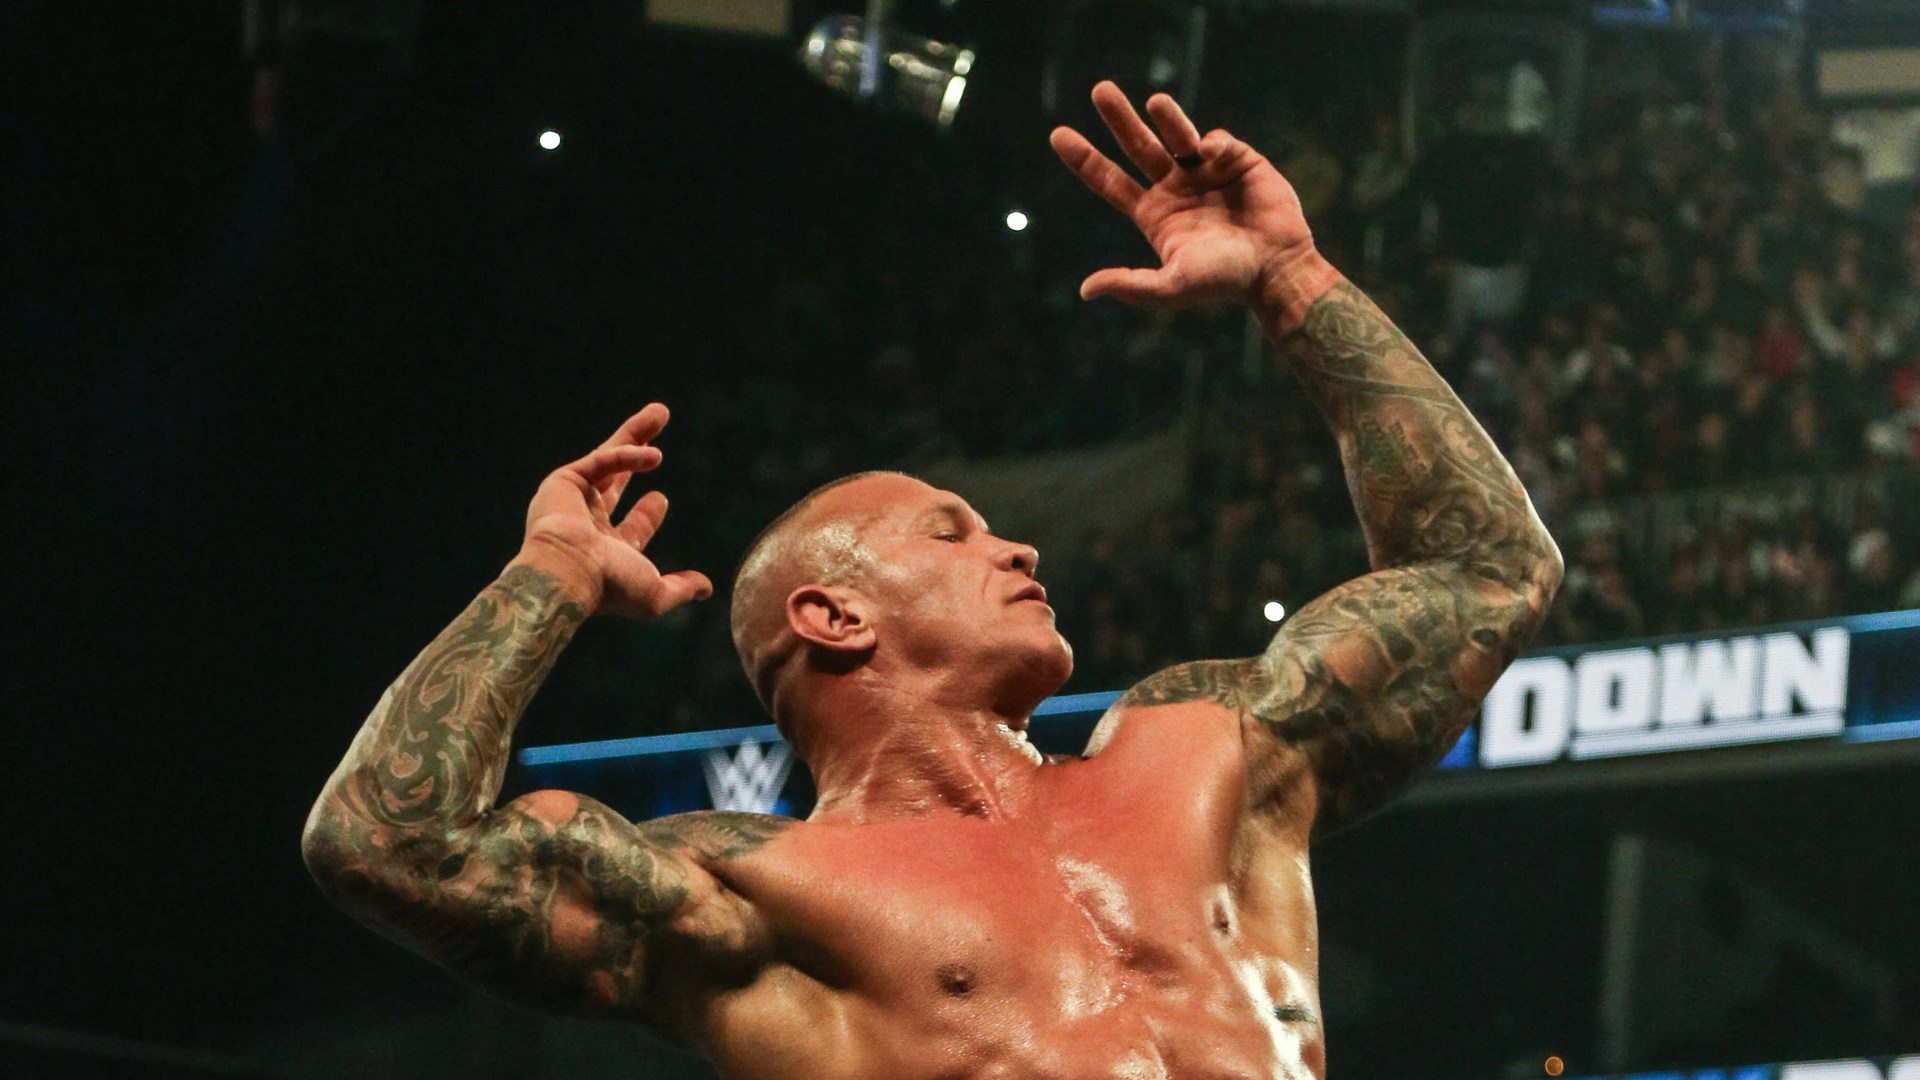 RESULTADOS EN VIVO DE WWE SmackDown: Bronson Reed gana Andre The Big Memorial Battle Royal antes de WrestleMania 40 – actualizaciones